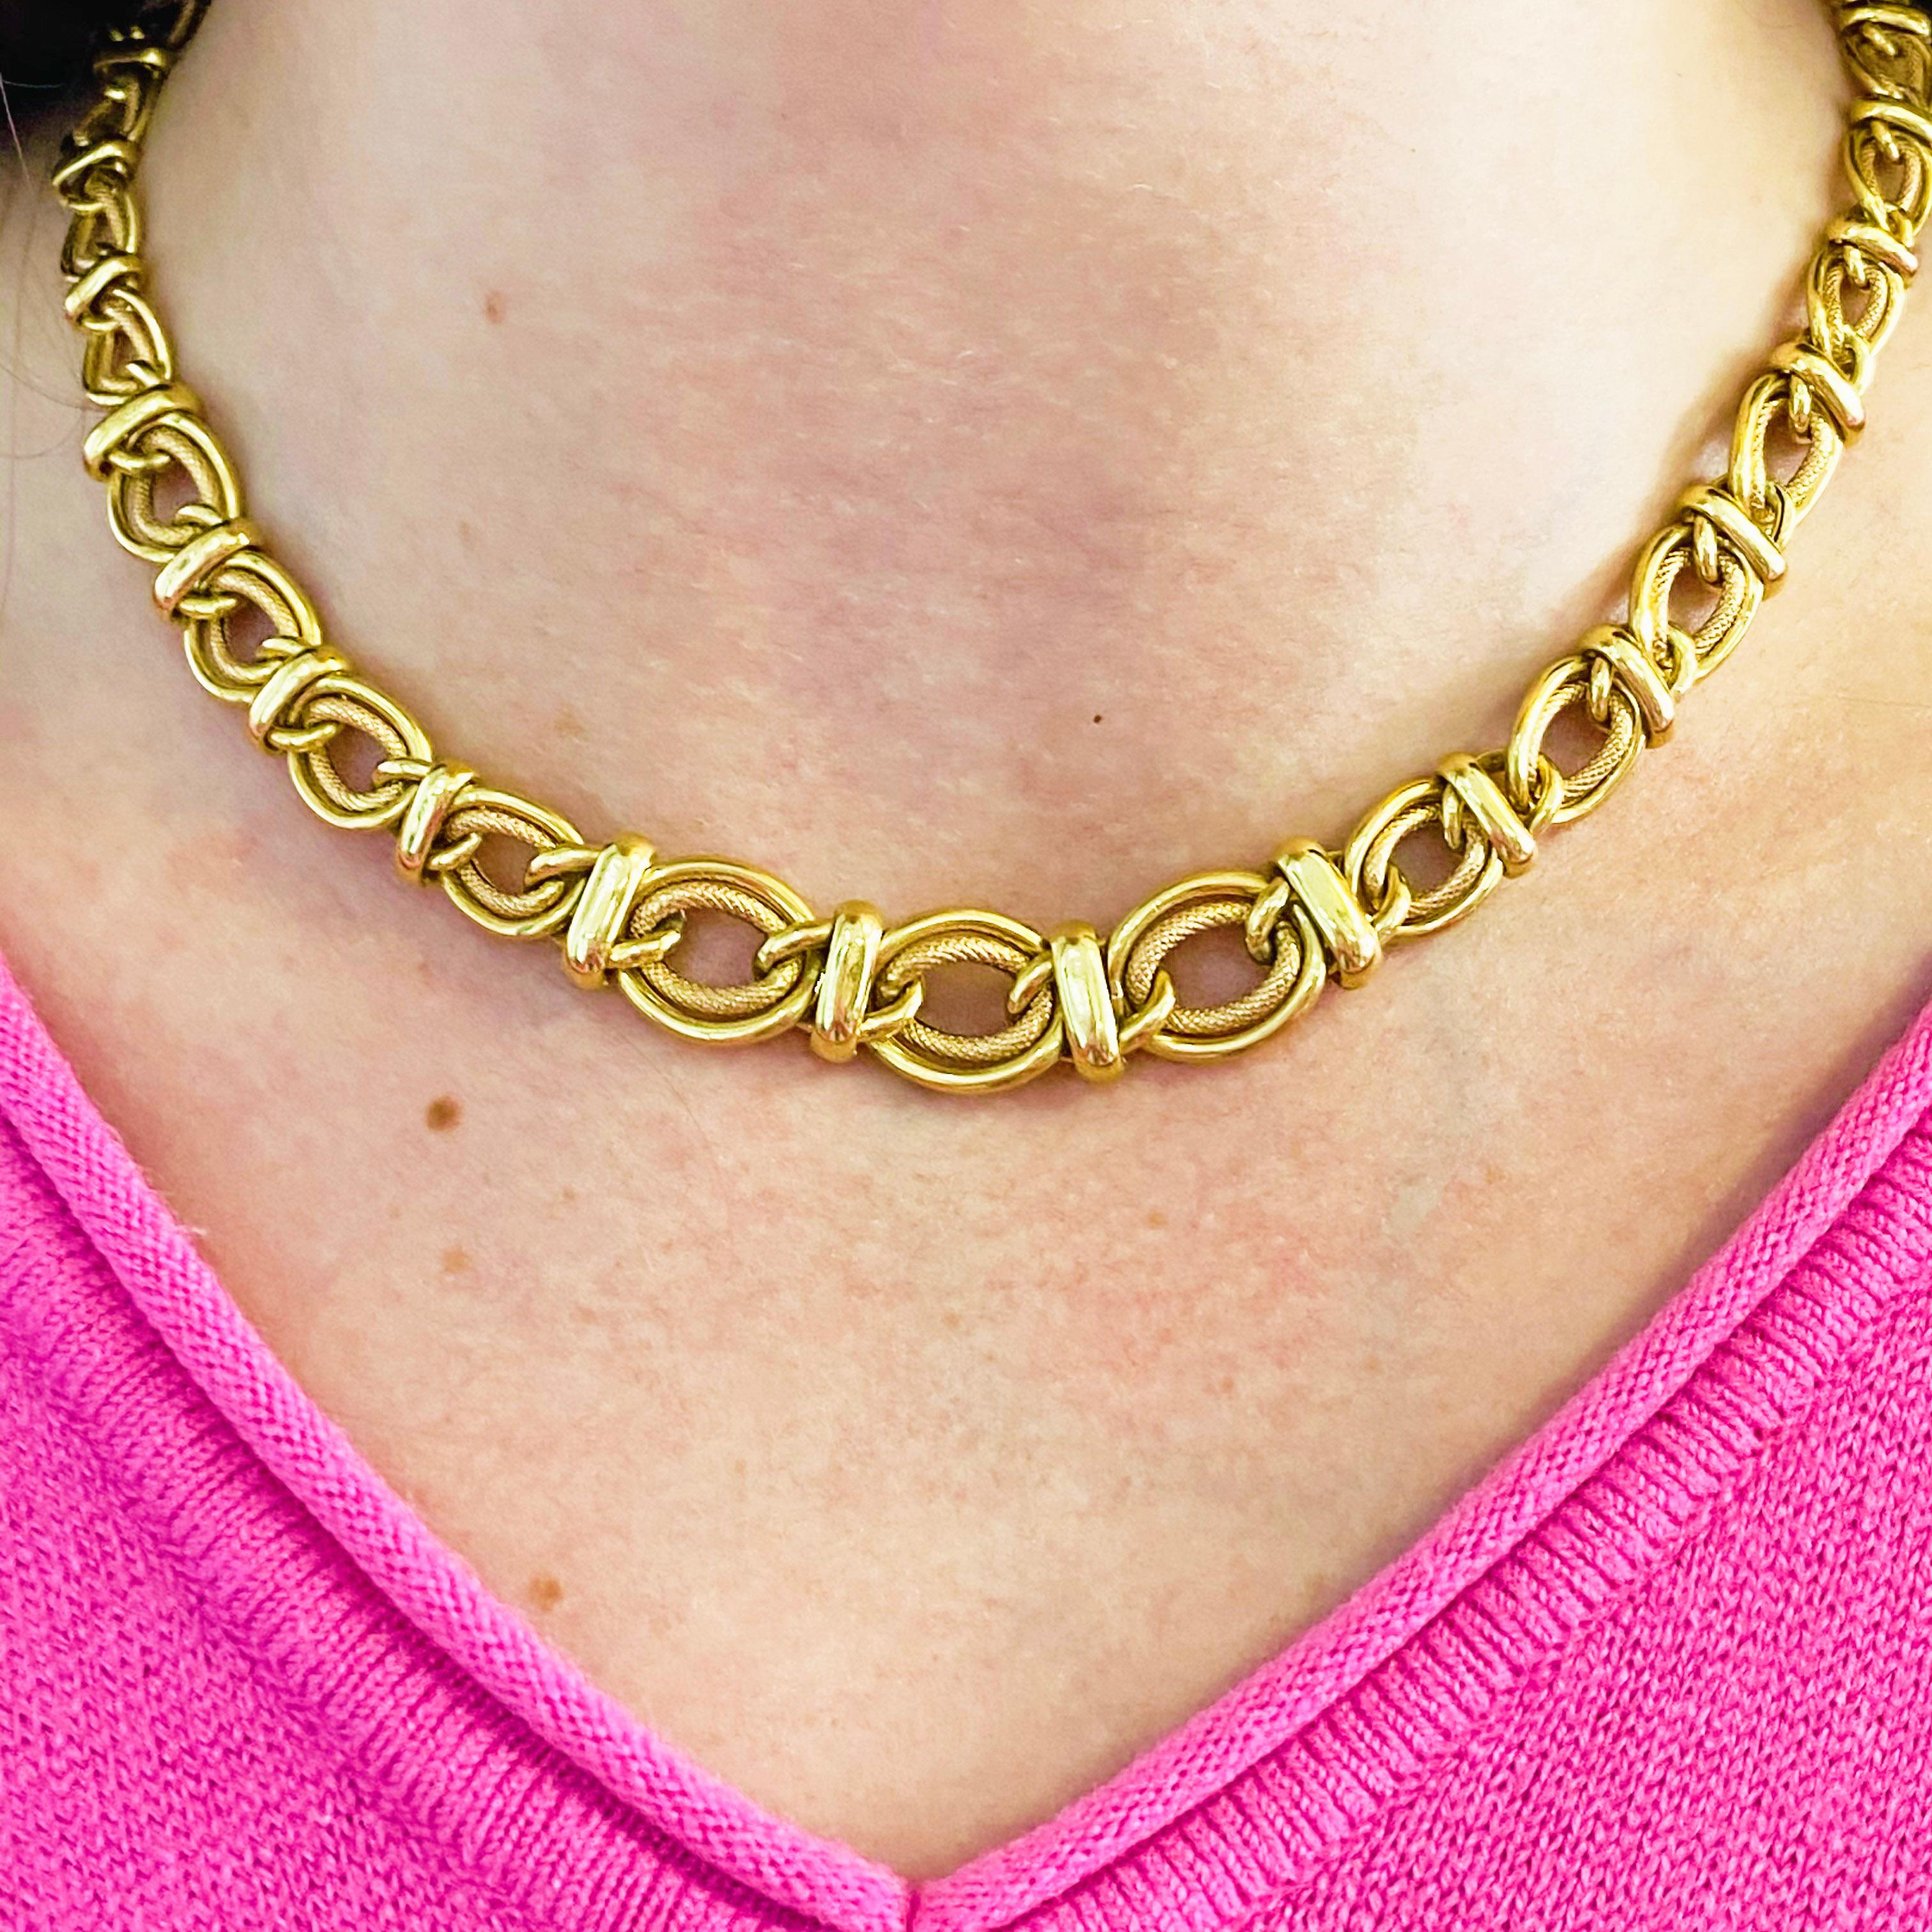 Ce collier ras du cou en chaîne brillante en or jaune 14 carats est extrêmement polyvalent ! Il offre un aspect classique qui s'accorde aussi bien avec des tenues décontractées qu'avec des tenues plus habillées. Le collier est unique en ce sens